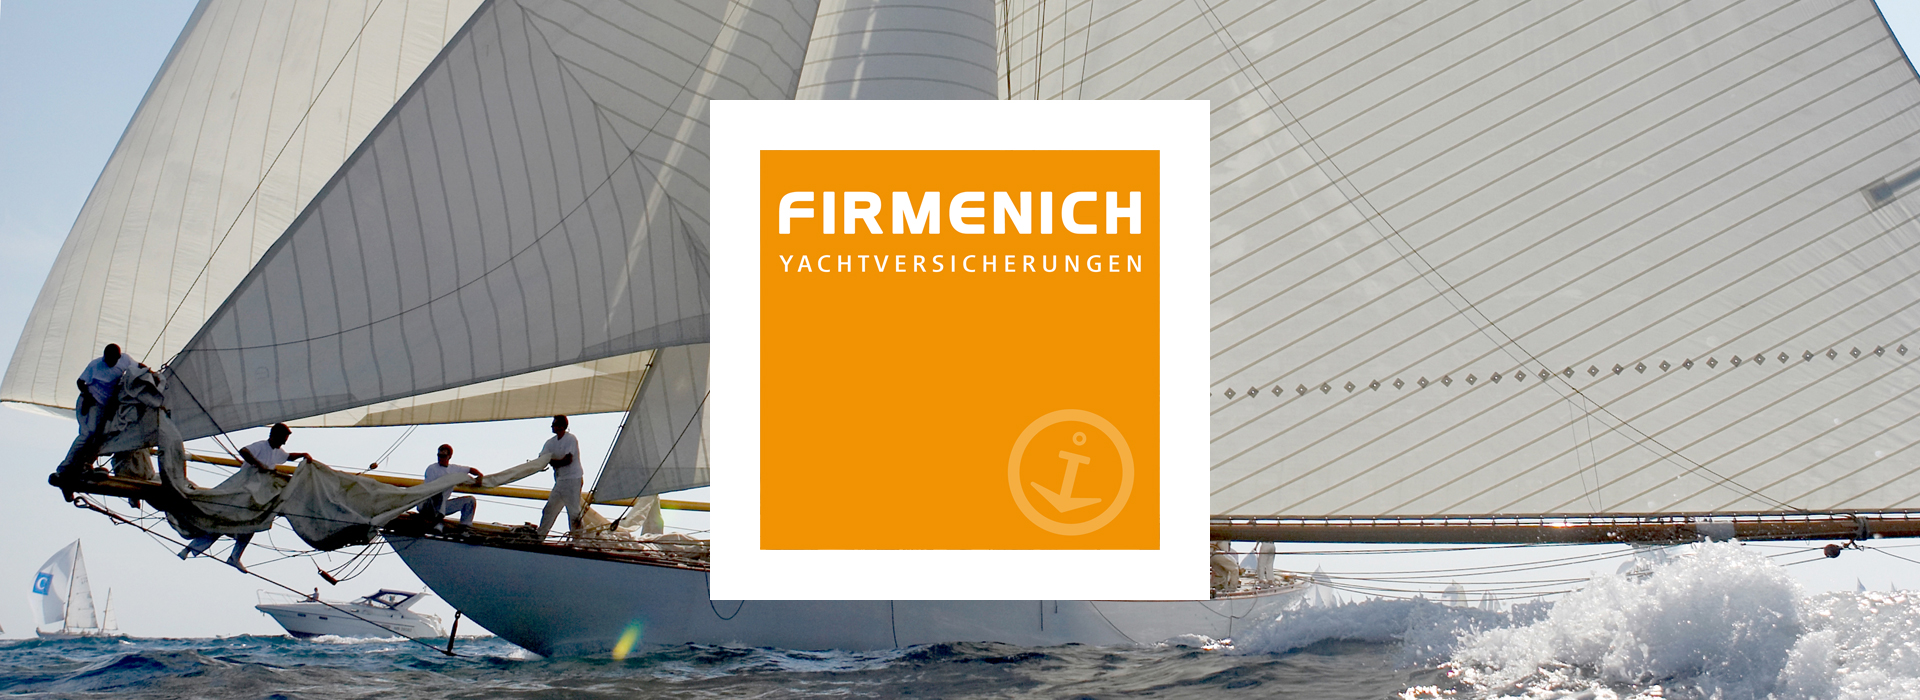 firmenich yachtversicherungen gmbh